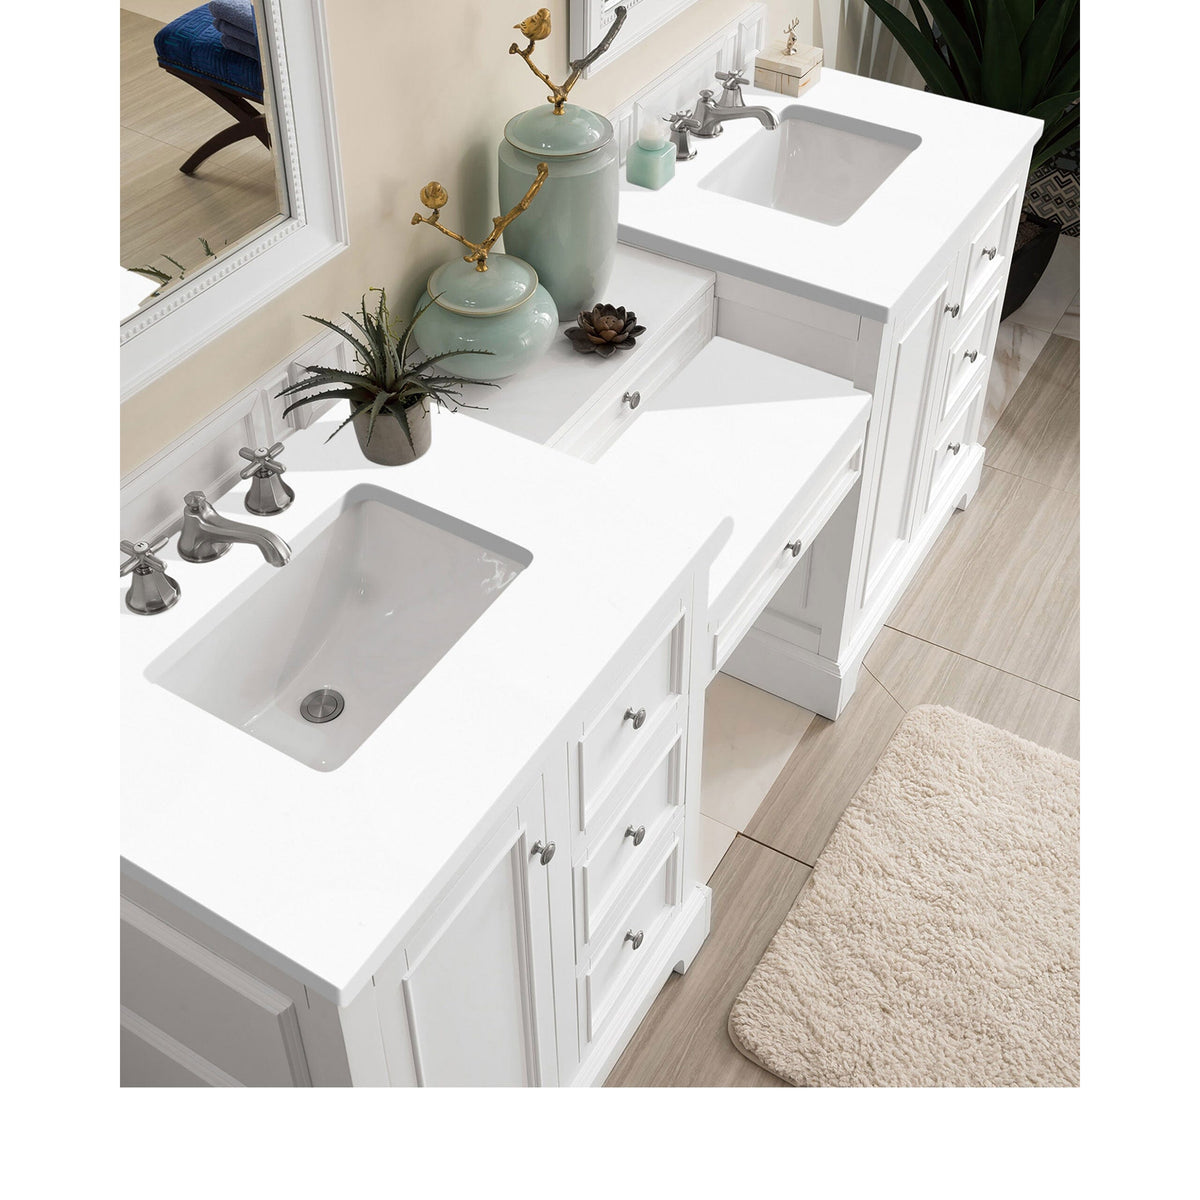 82" De Soto Double Bathroom Vanity with Makeup Counter, Bright White - vanitiesdepot.com